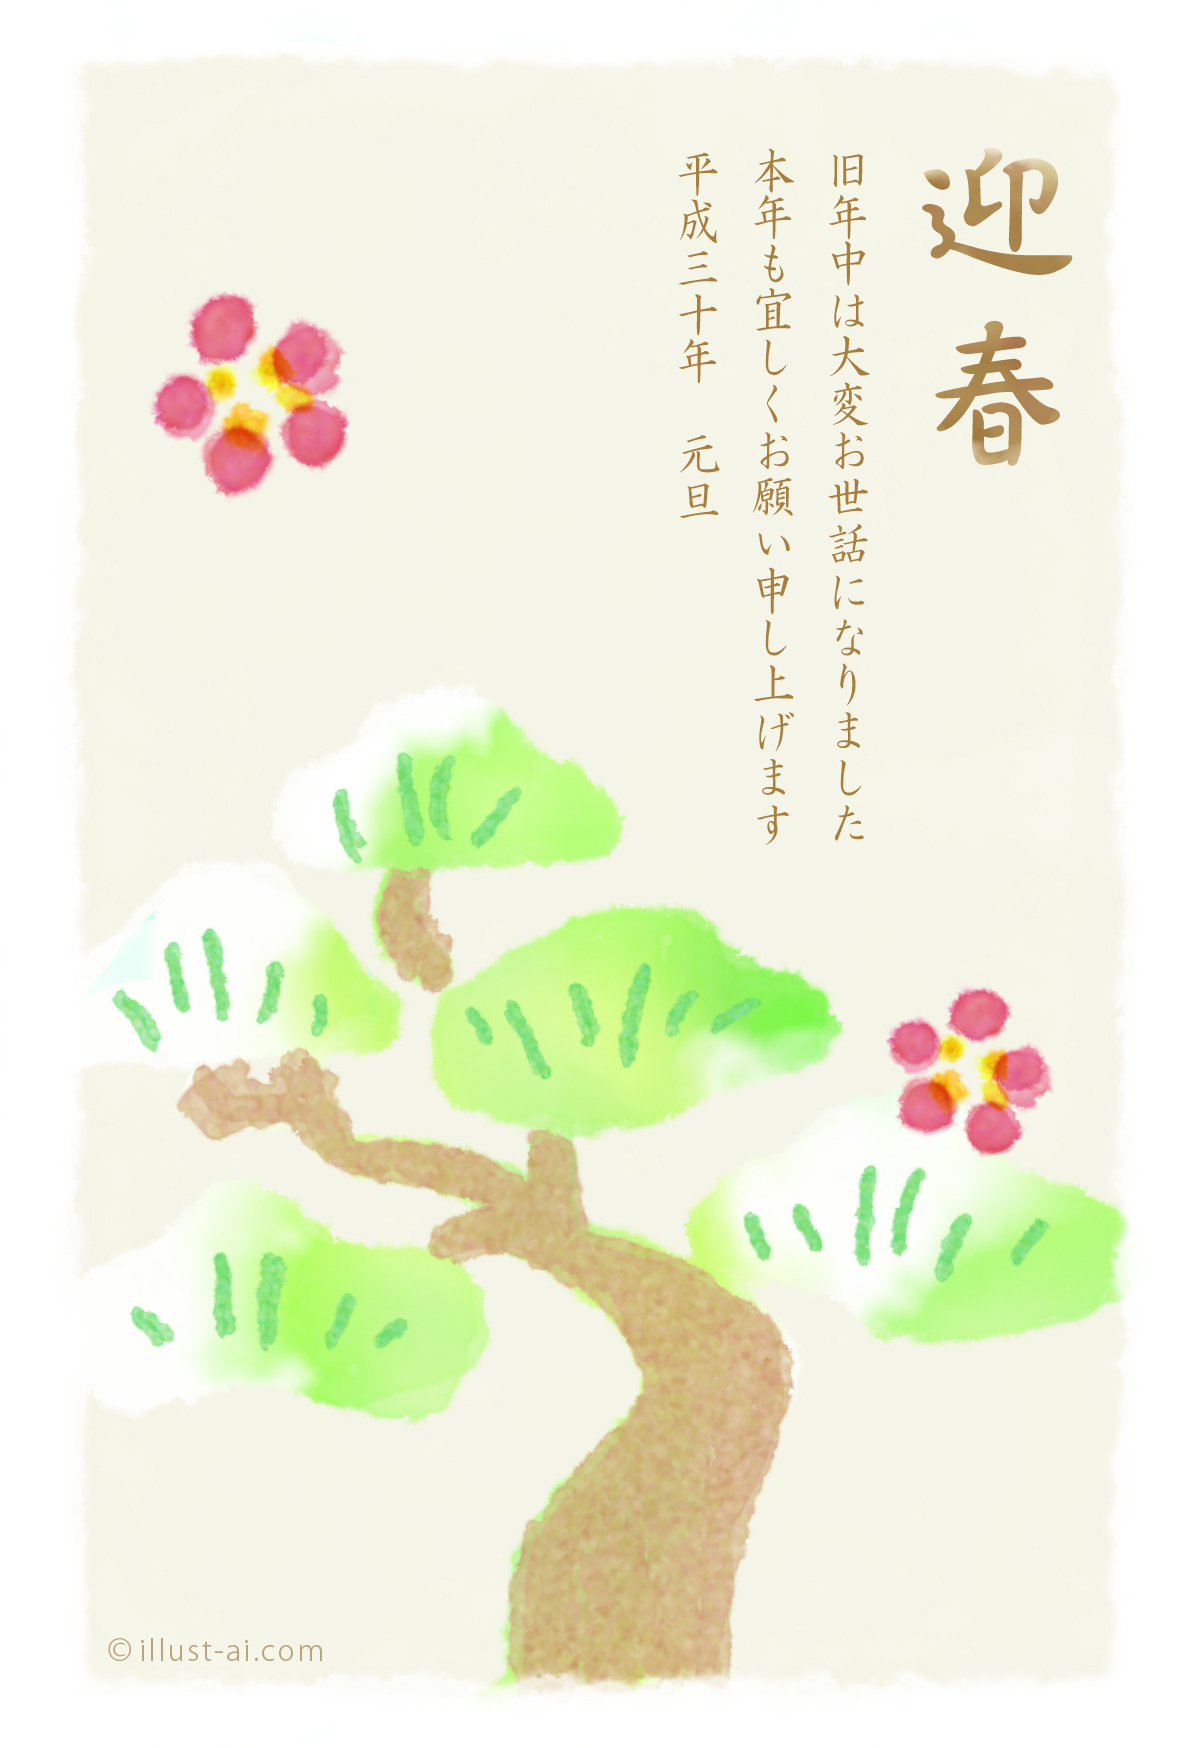 年賀状 戌年 水彩風の松のイラストが優しい雰囲気の年賀状 年賀状18無料イラスト素材集